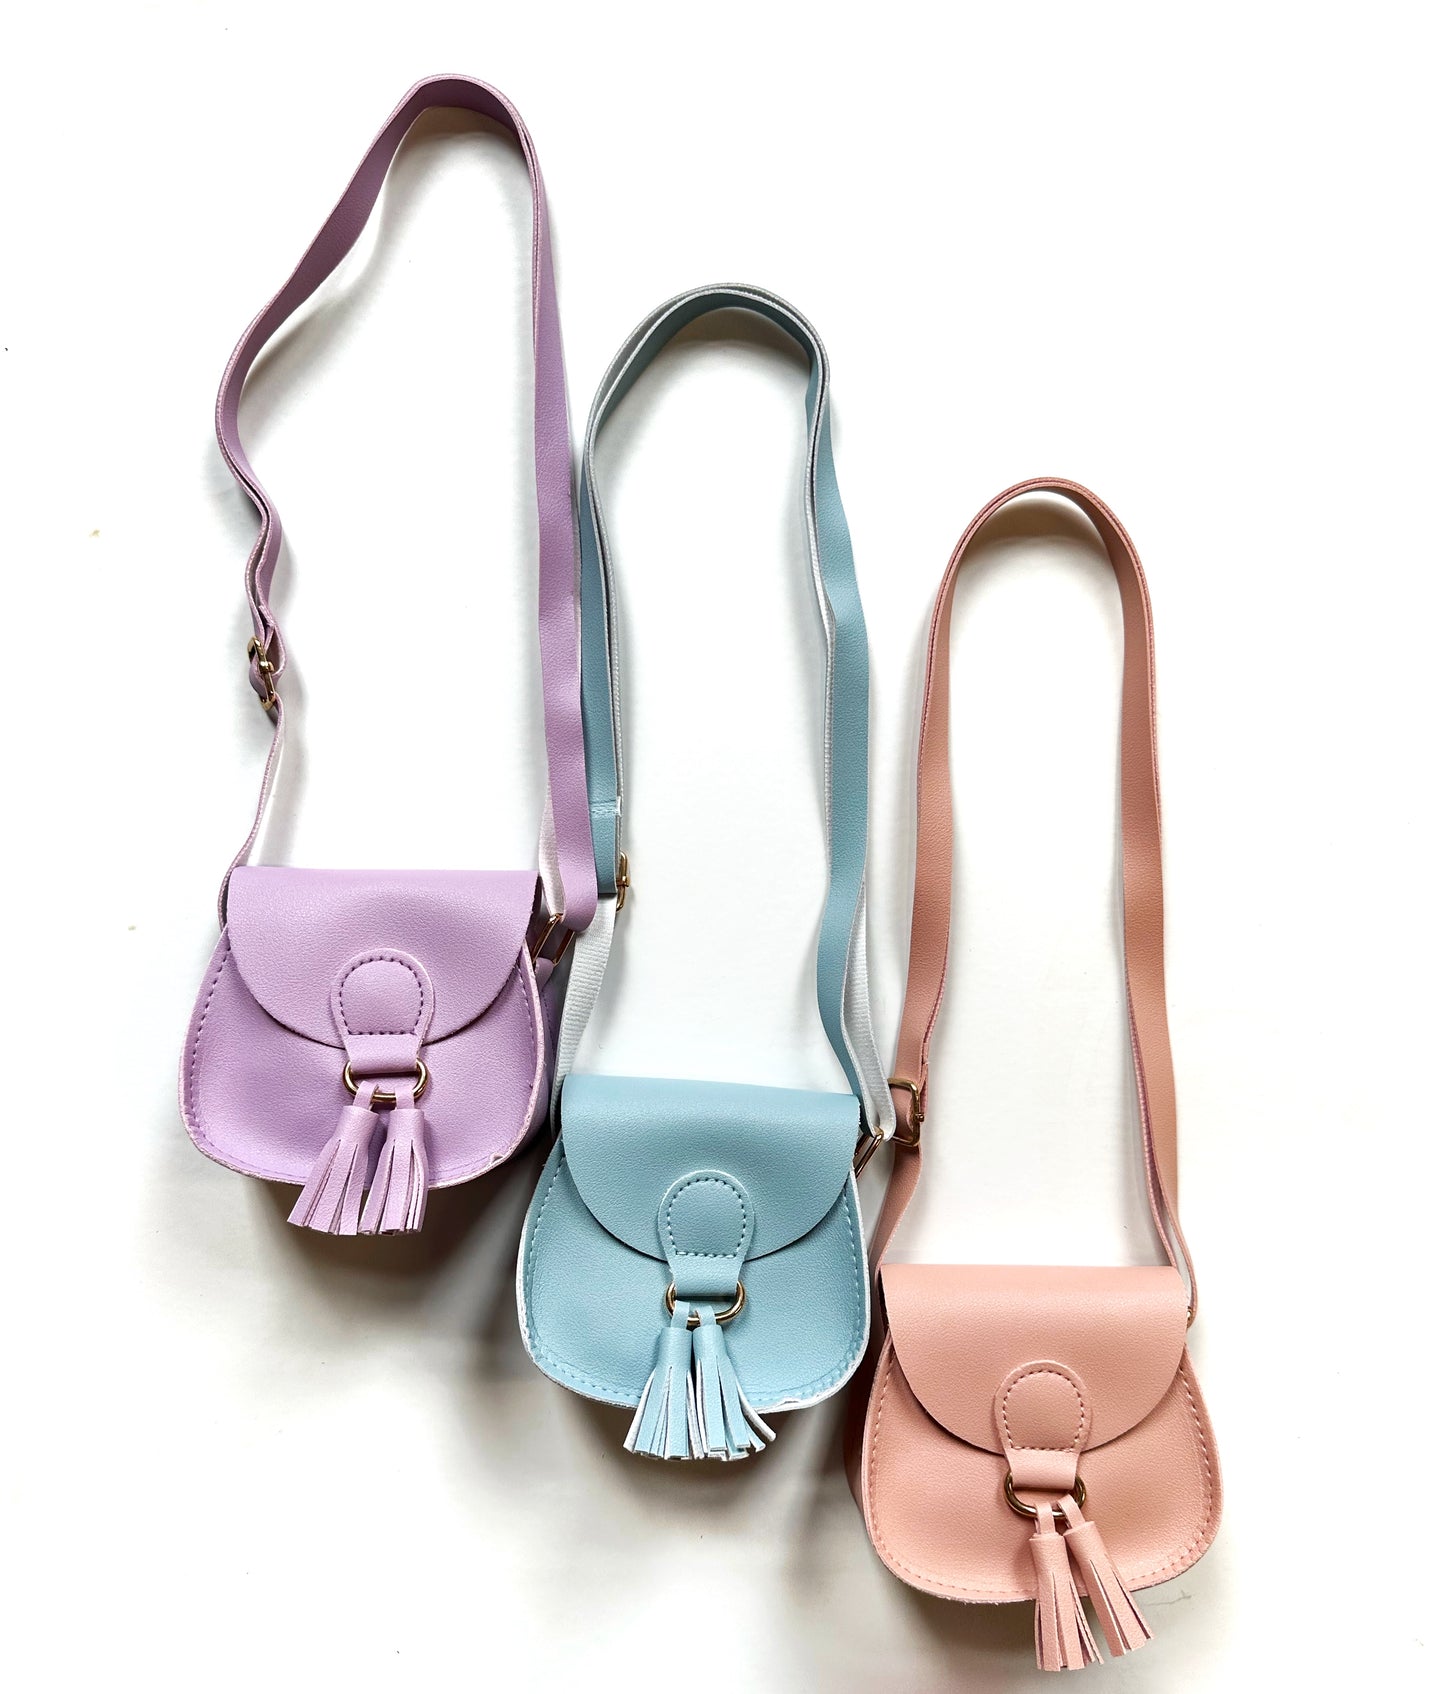 The sweetest ‘lil tassel purse